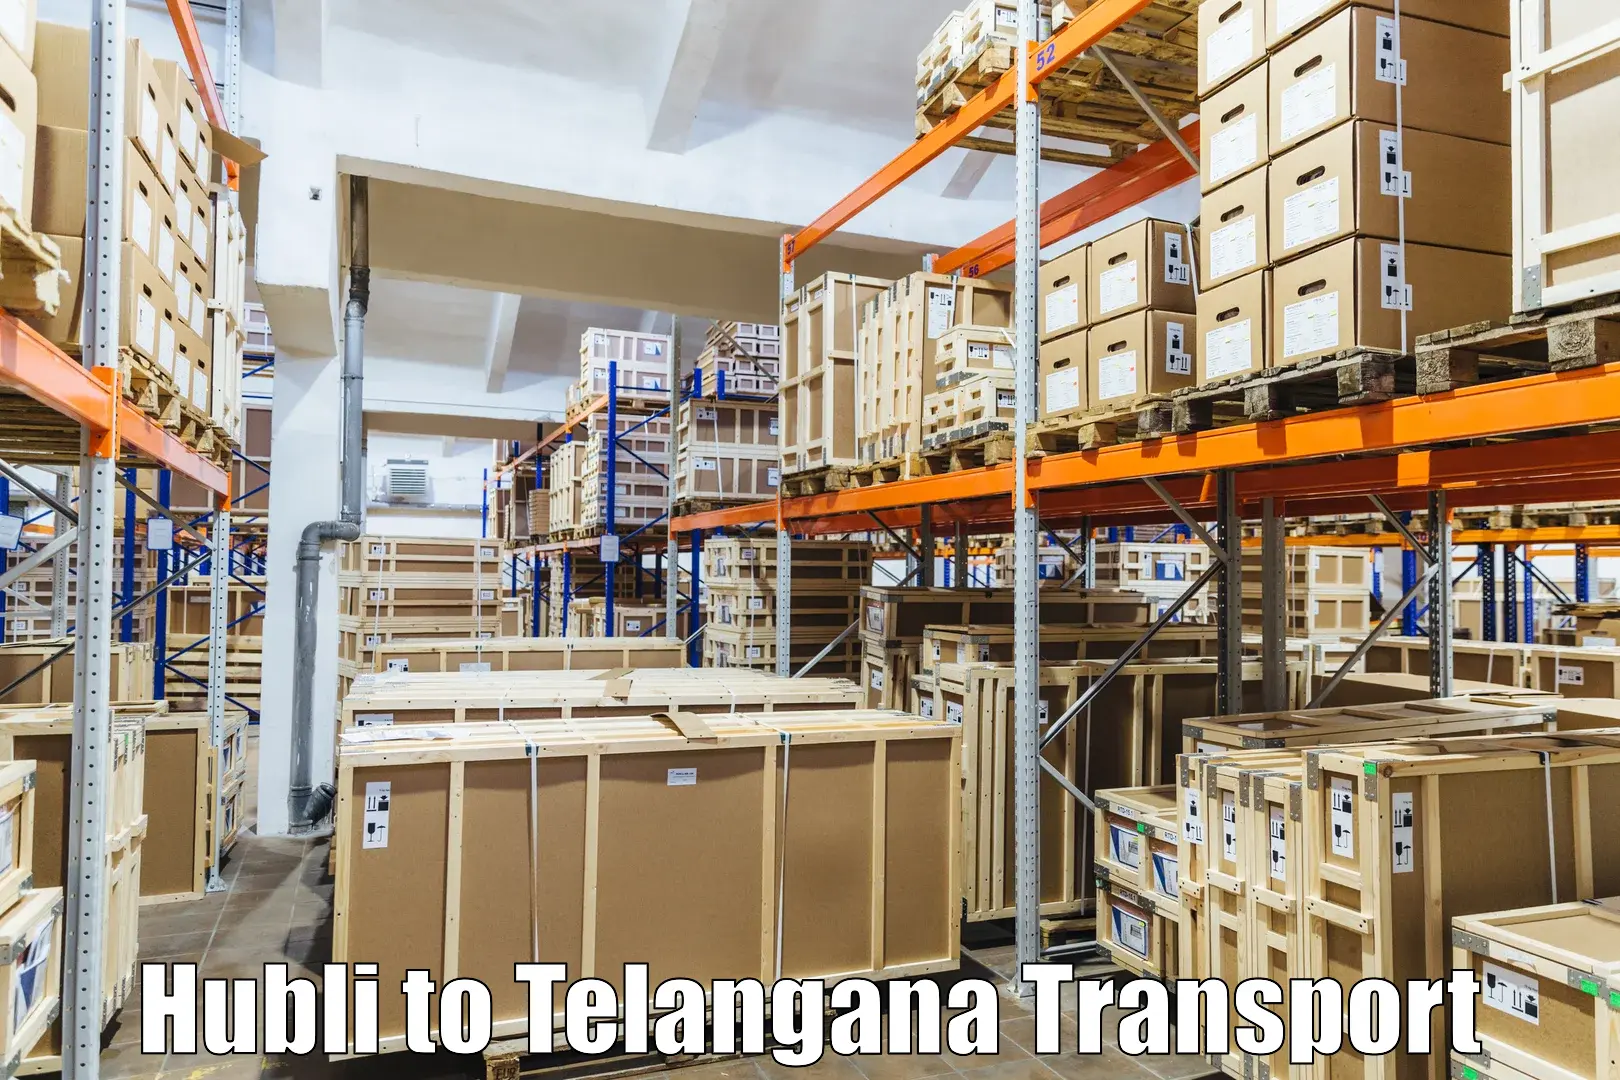 Transport in sharing Hubli to Veenavanka